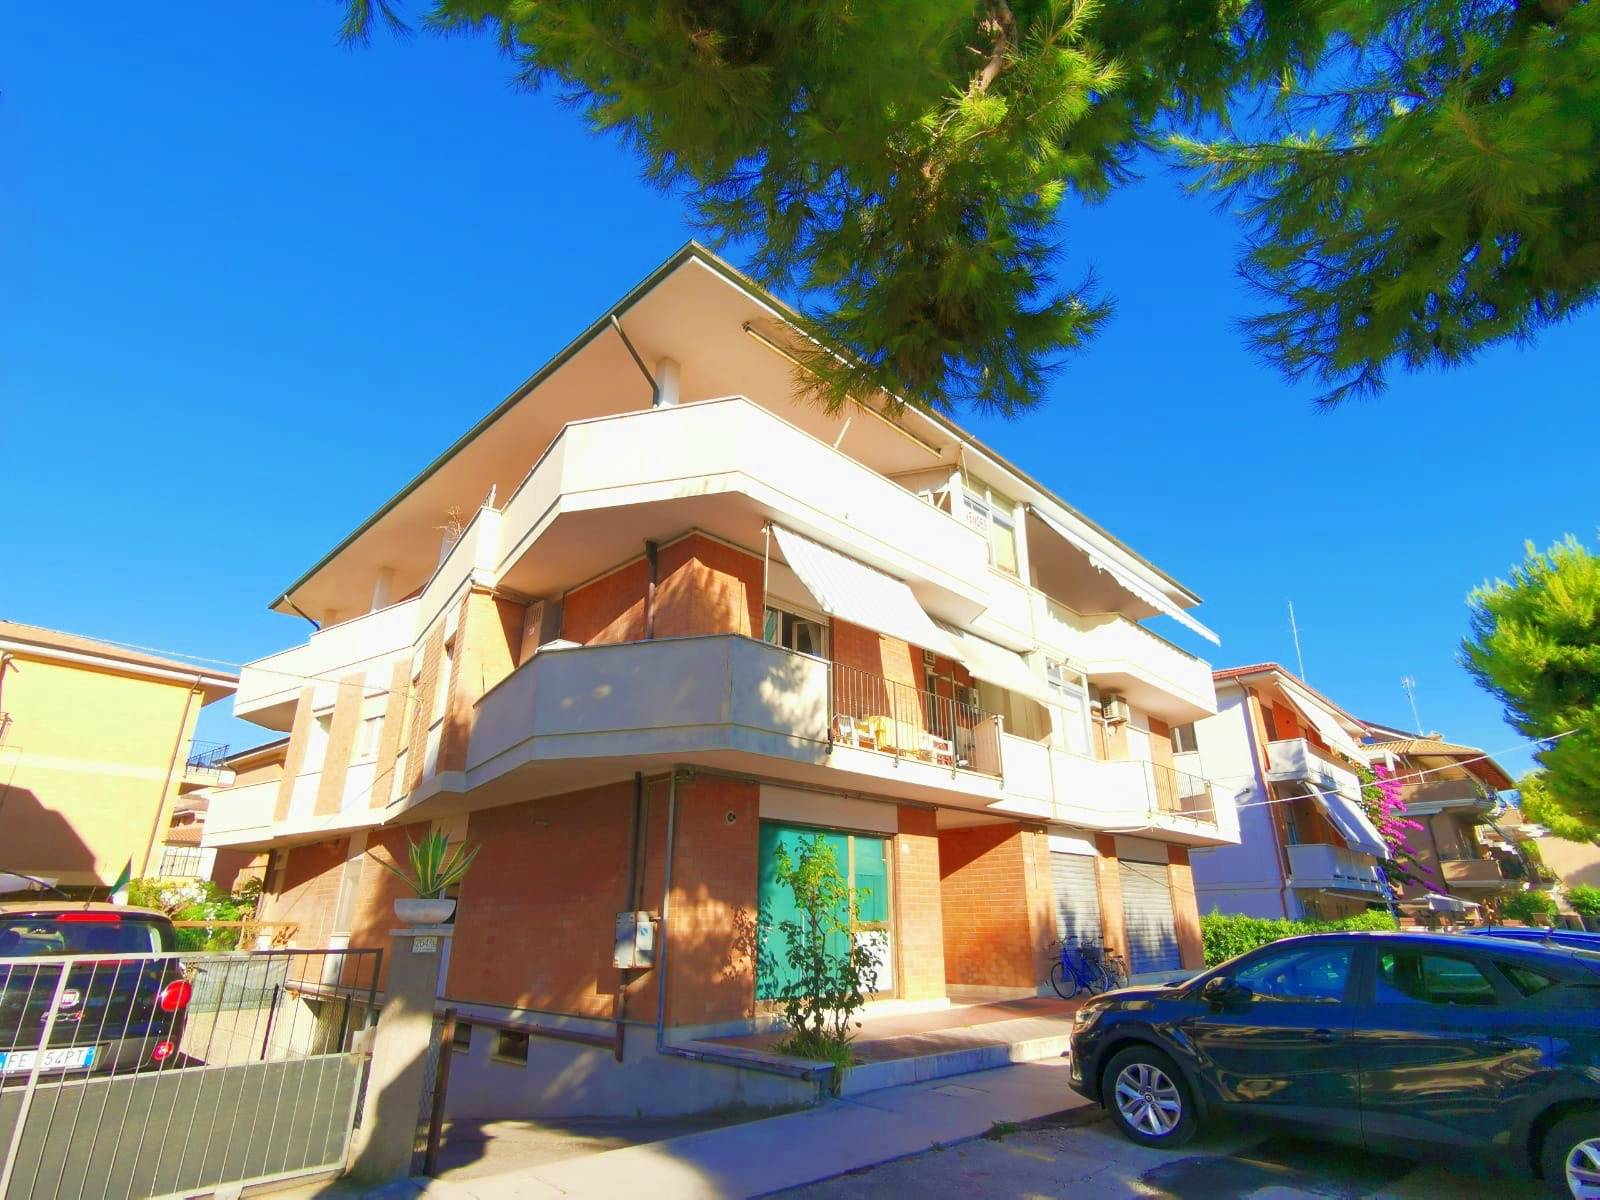 Appartamento in vendita a Porto San Giorgio, 5 locali, prezzo € 280.000 | PortaleAgenzieImmobiliari.it